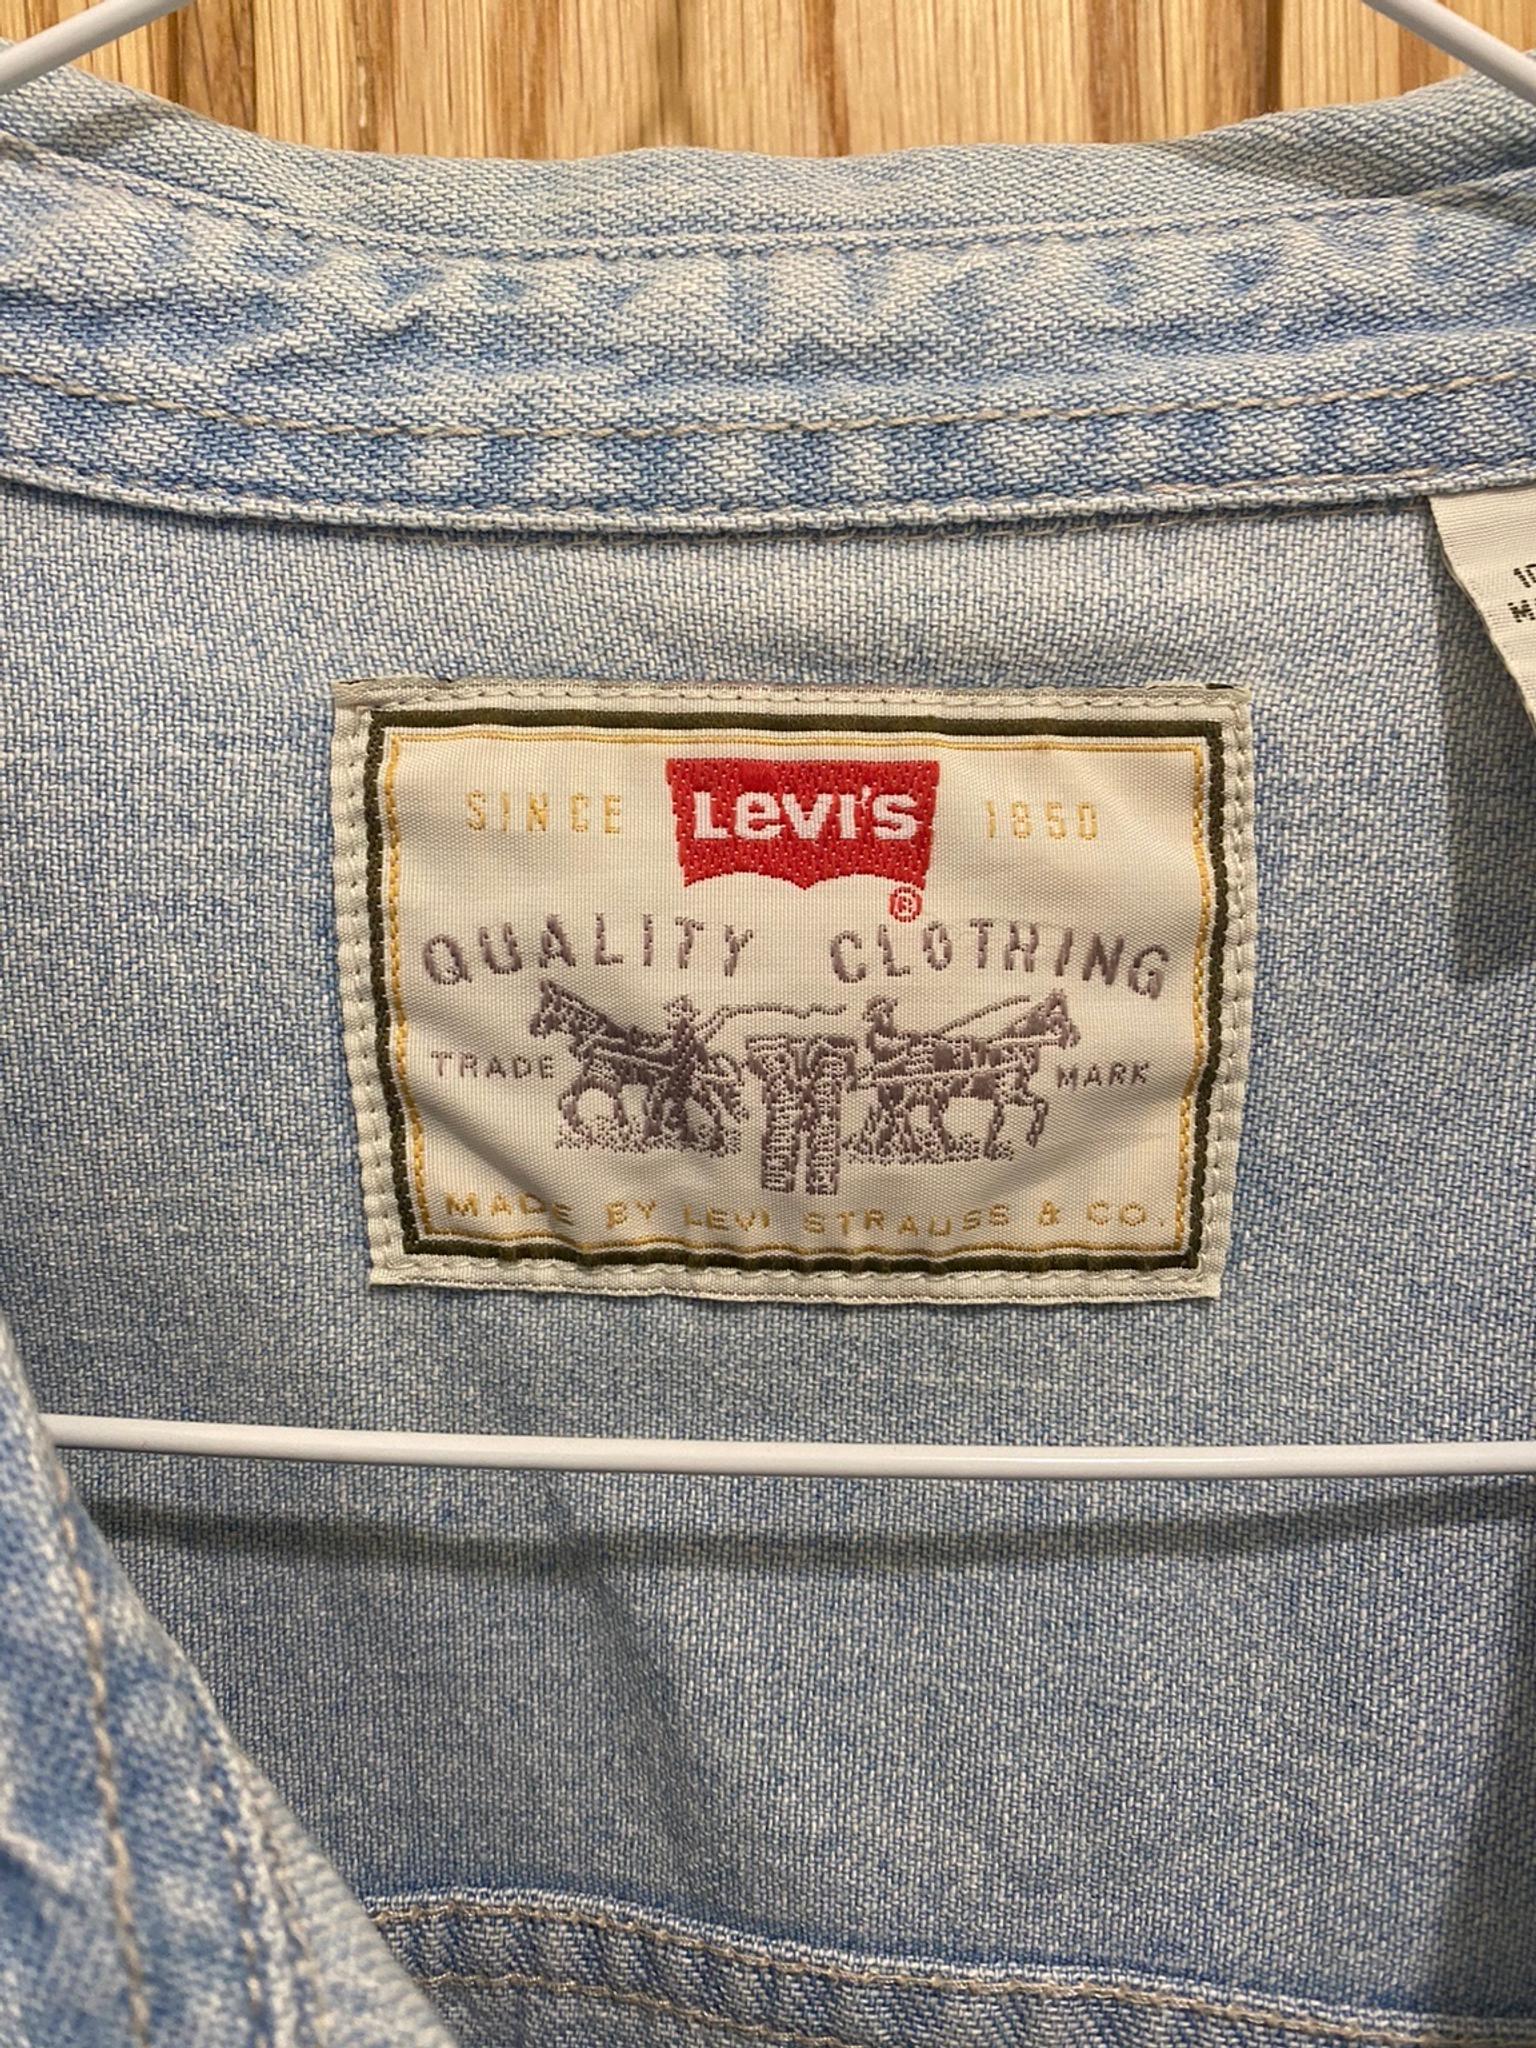 vintage levi's shirt labels